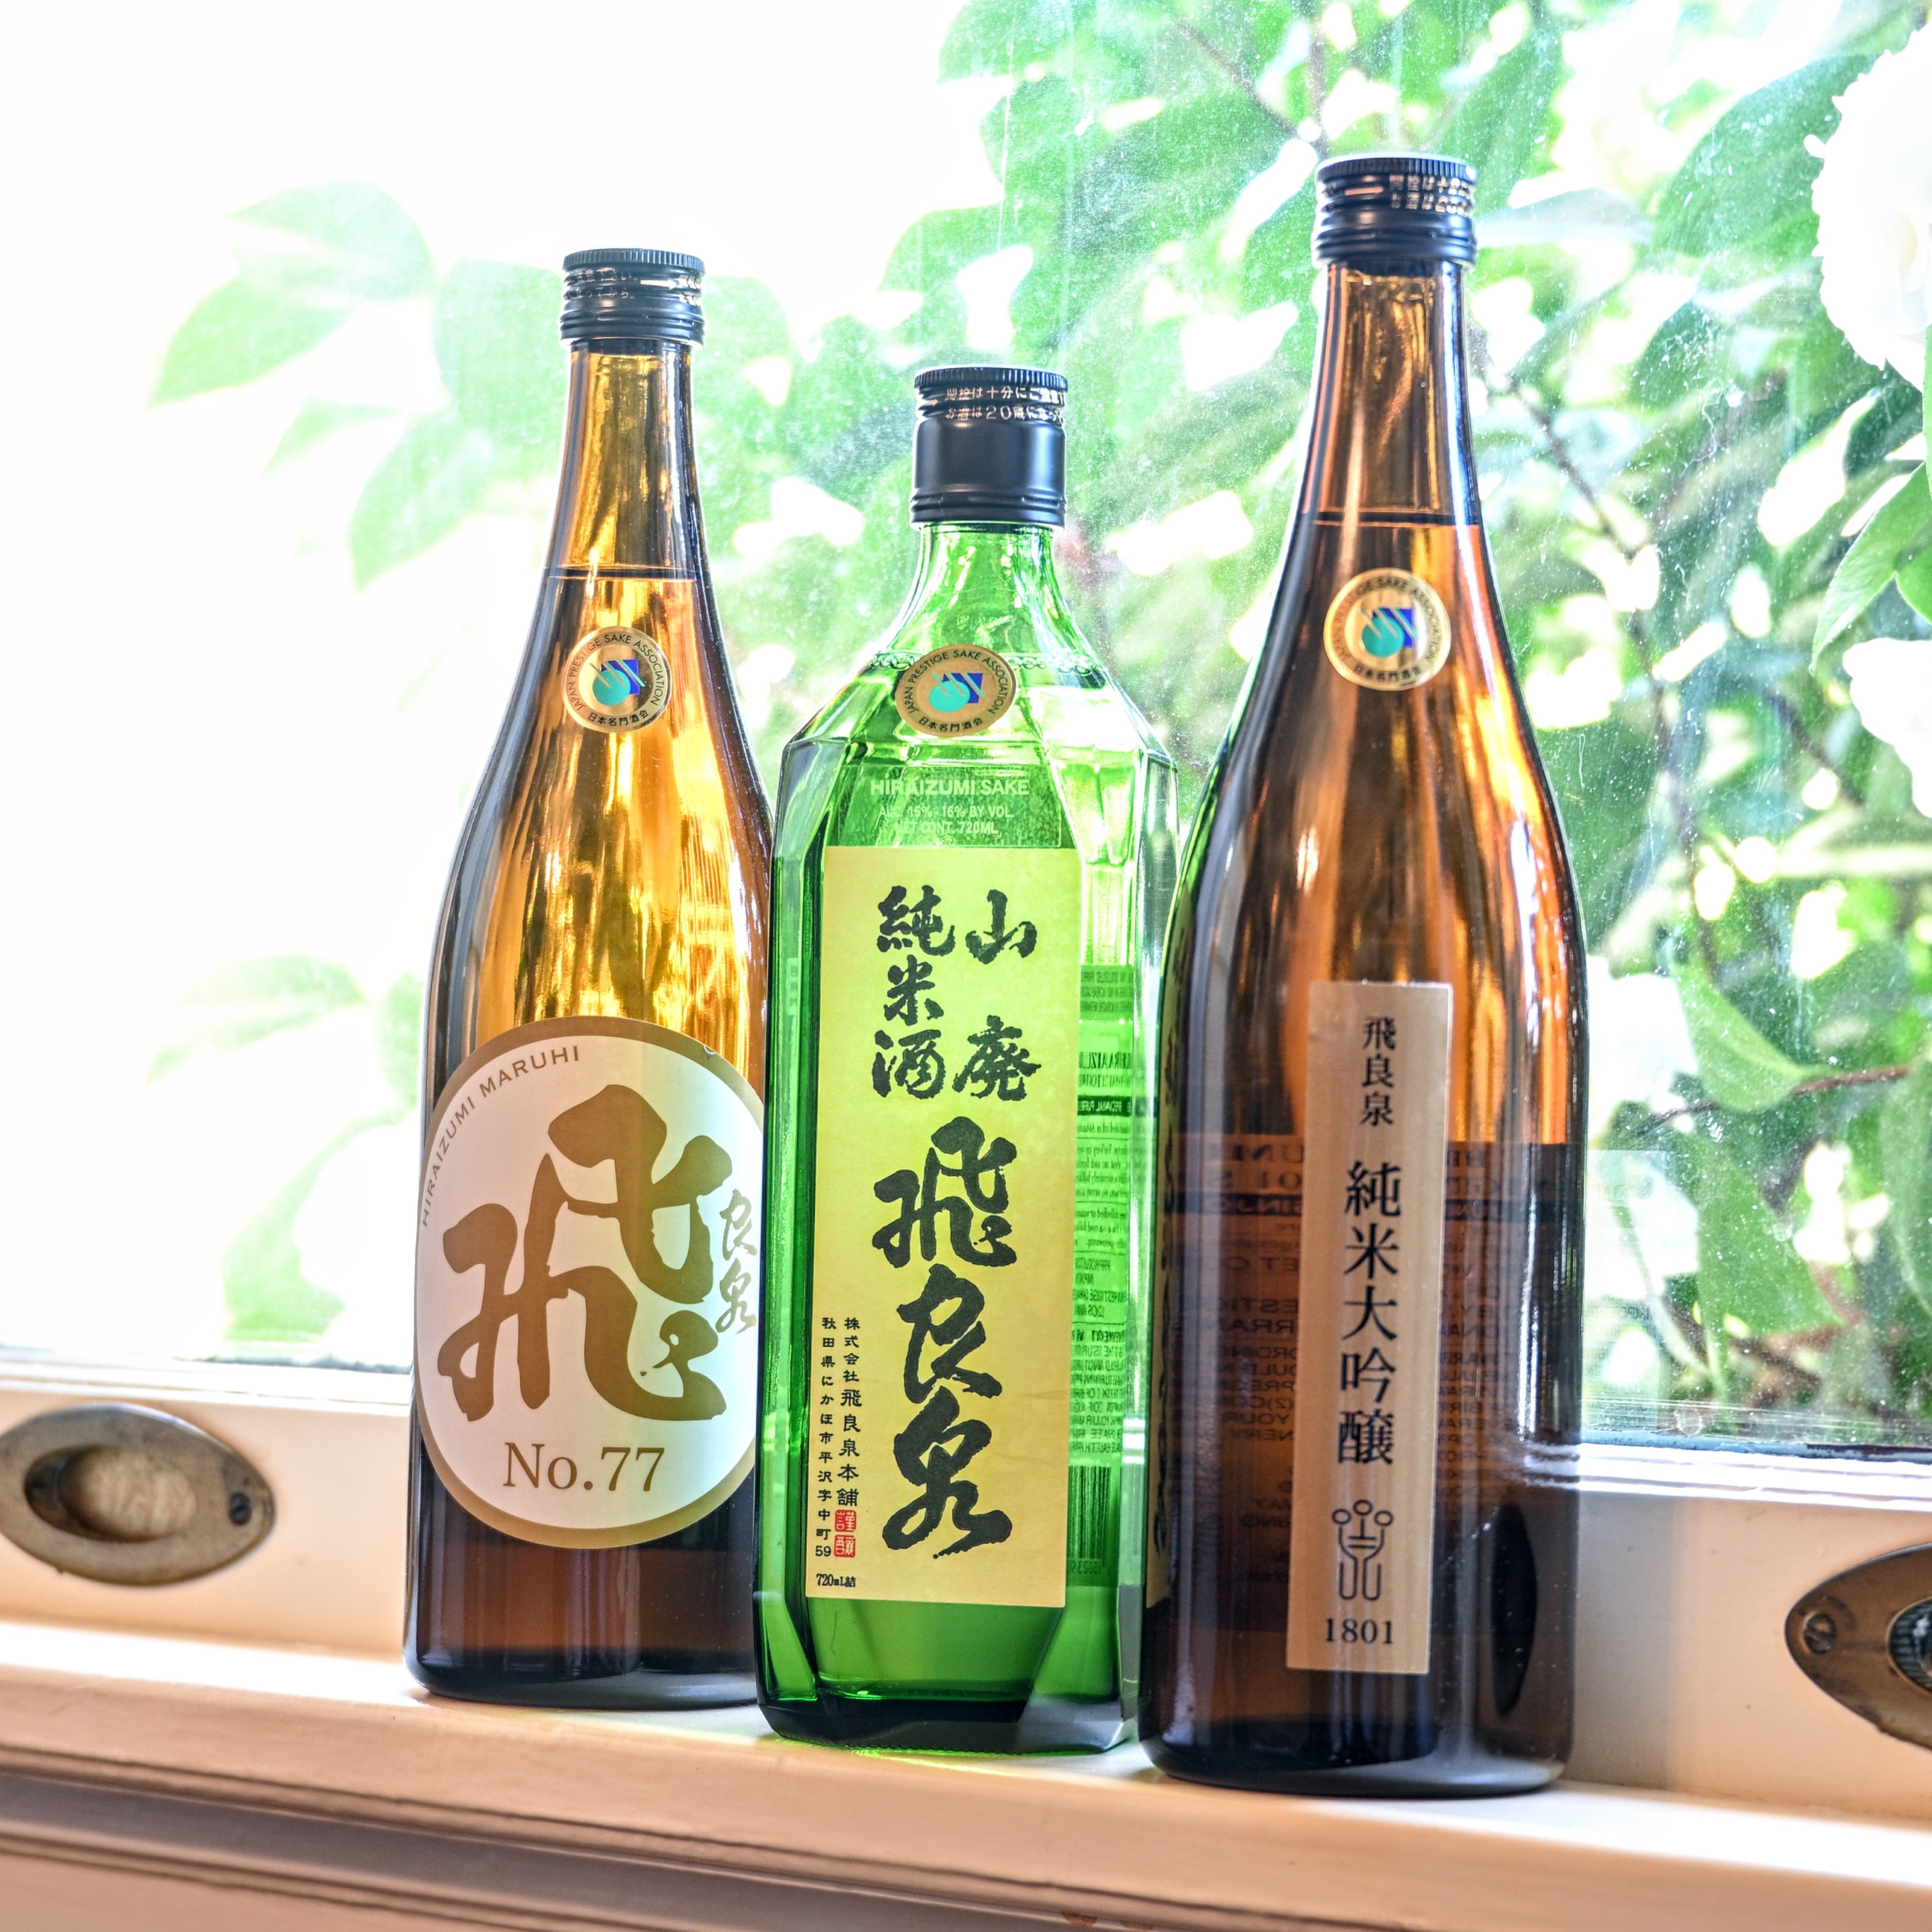 Hiraizumi sake bottles